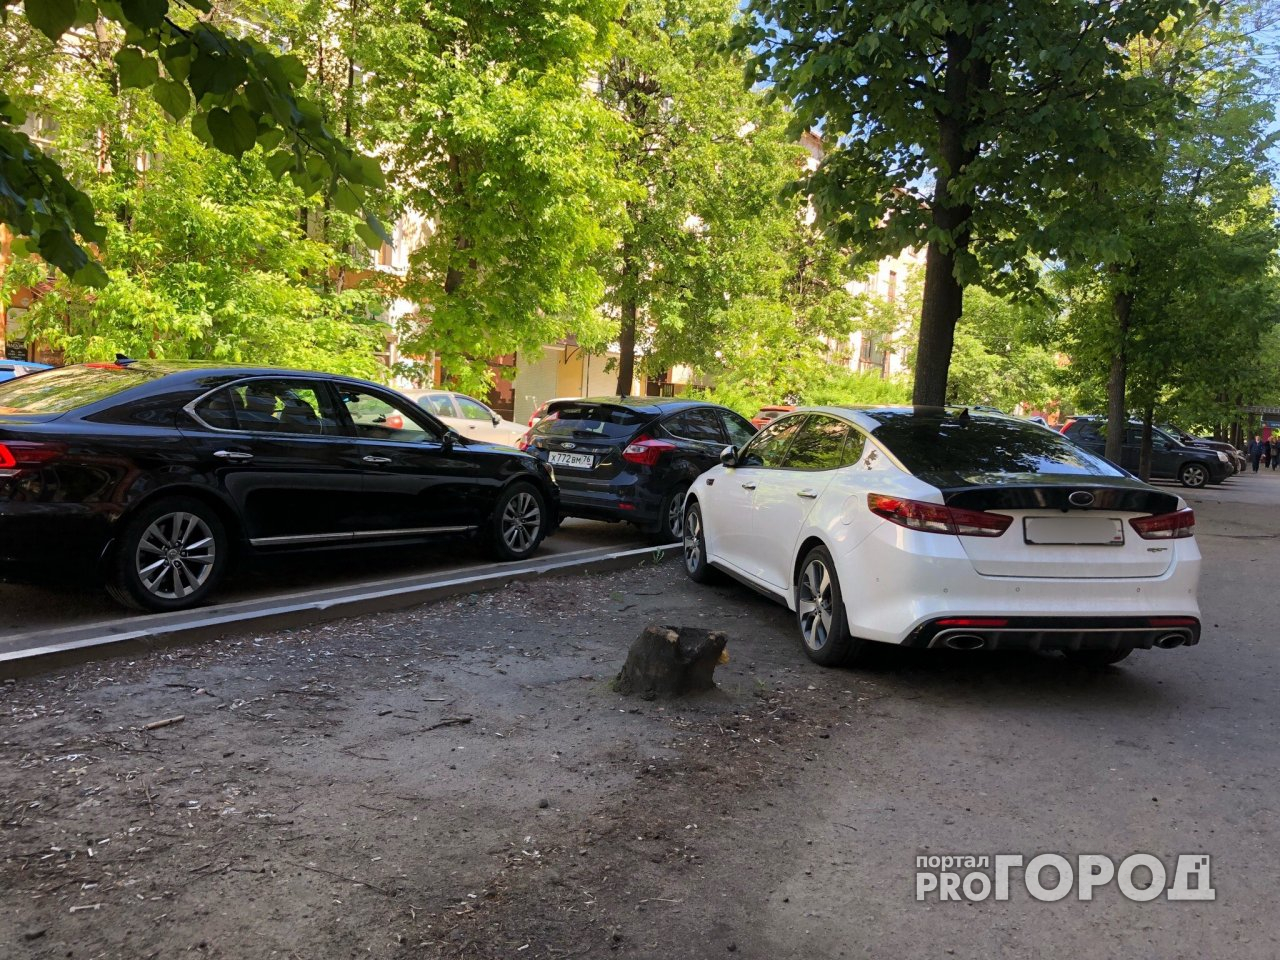 Почувствовал себя пешеходом: в Ярославле наказали наглого парковщика